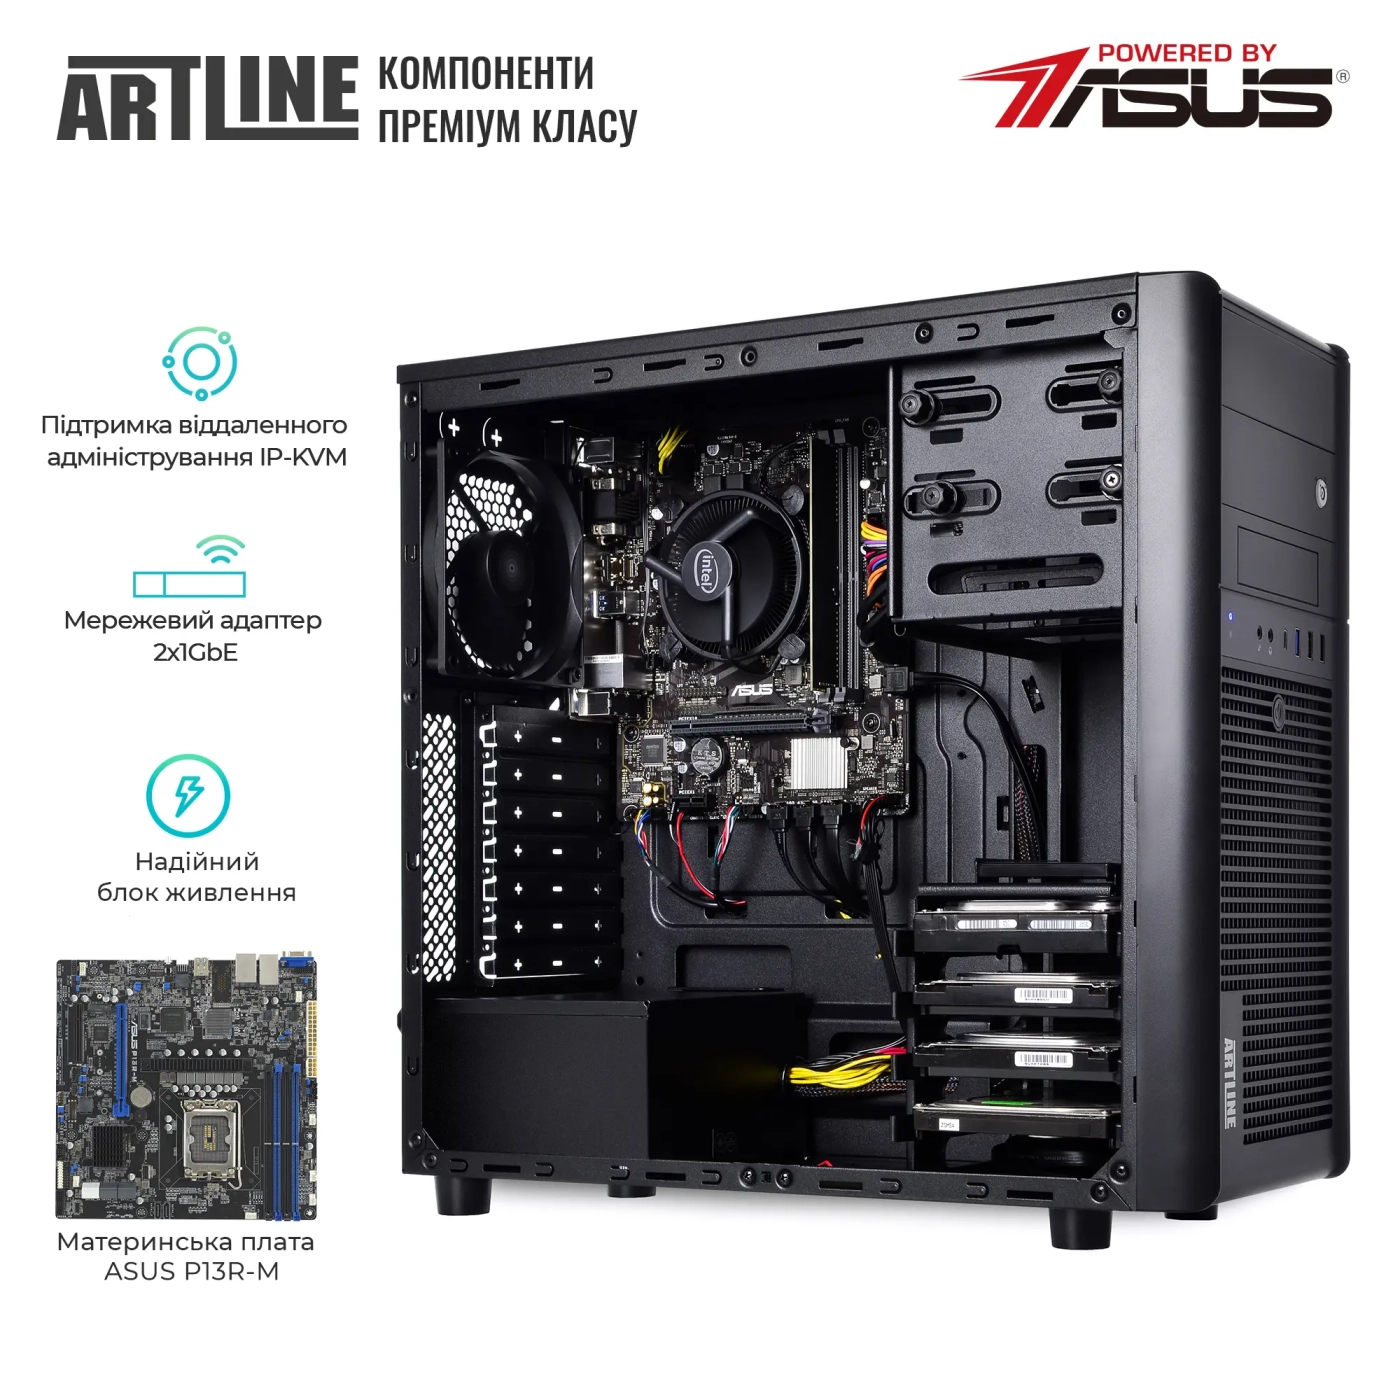 Купить Сервер ARTLINE Business T35 (T35v38) - фото 2